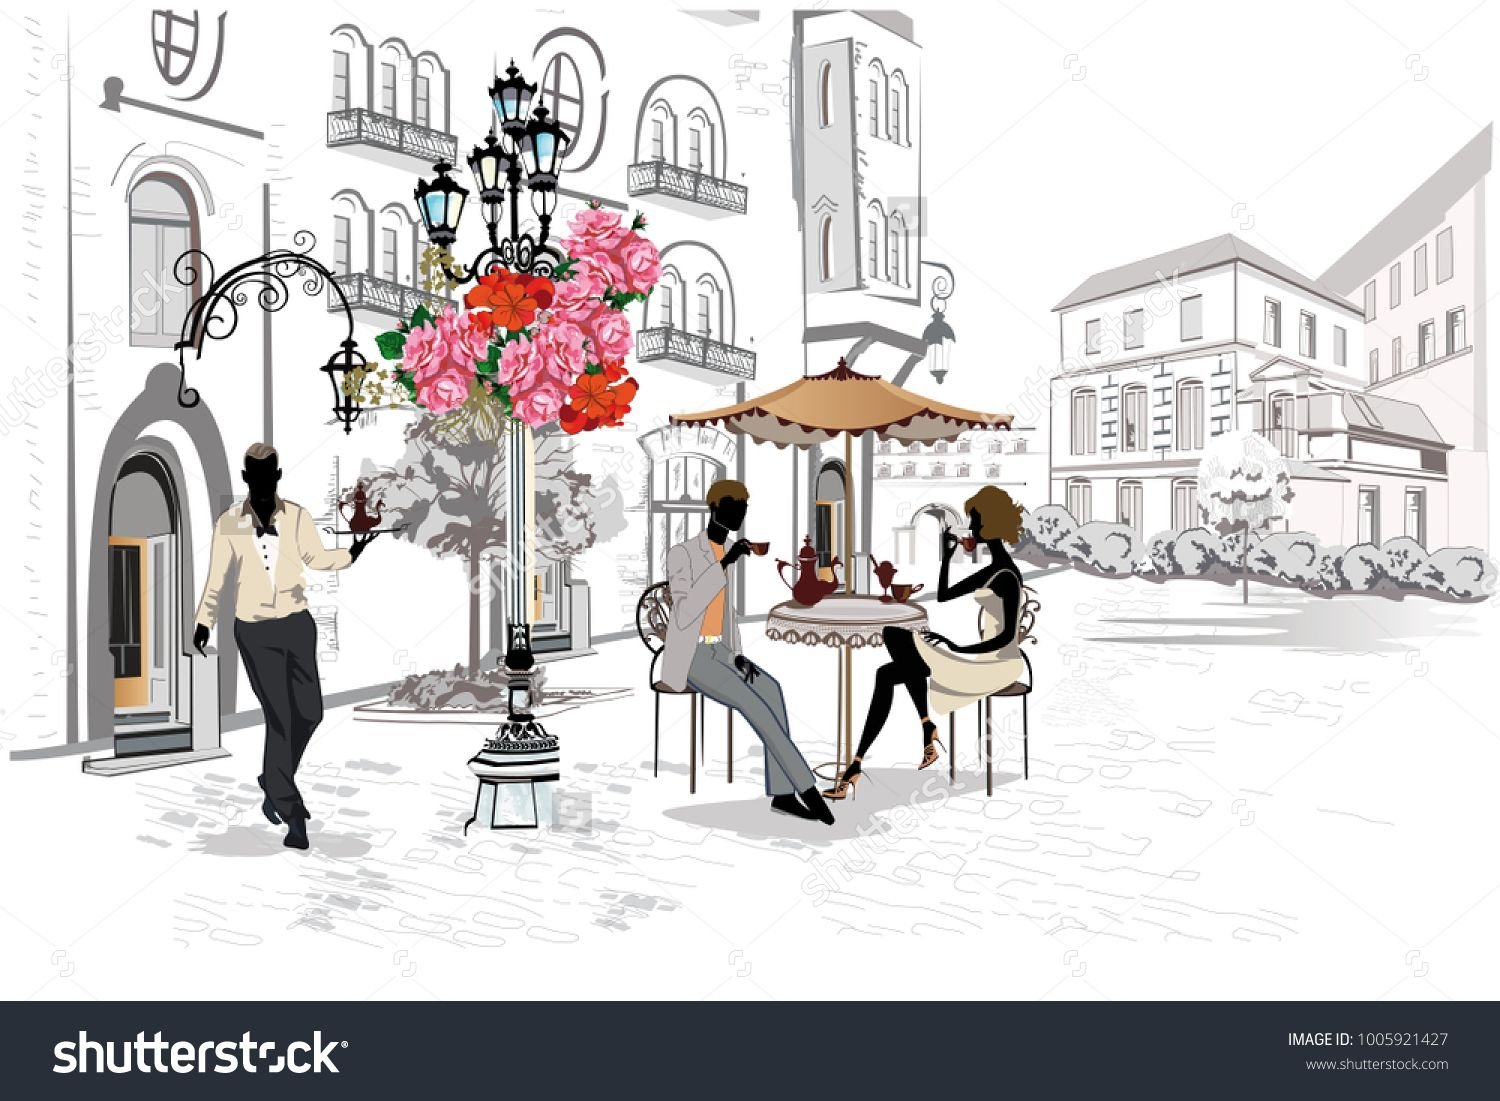 Уличные кафе - Стоковая иллюстрация